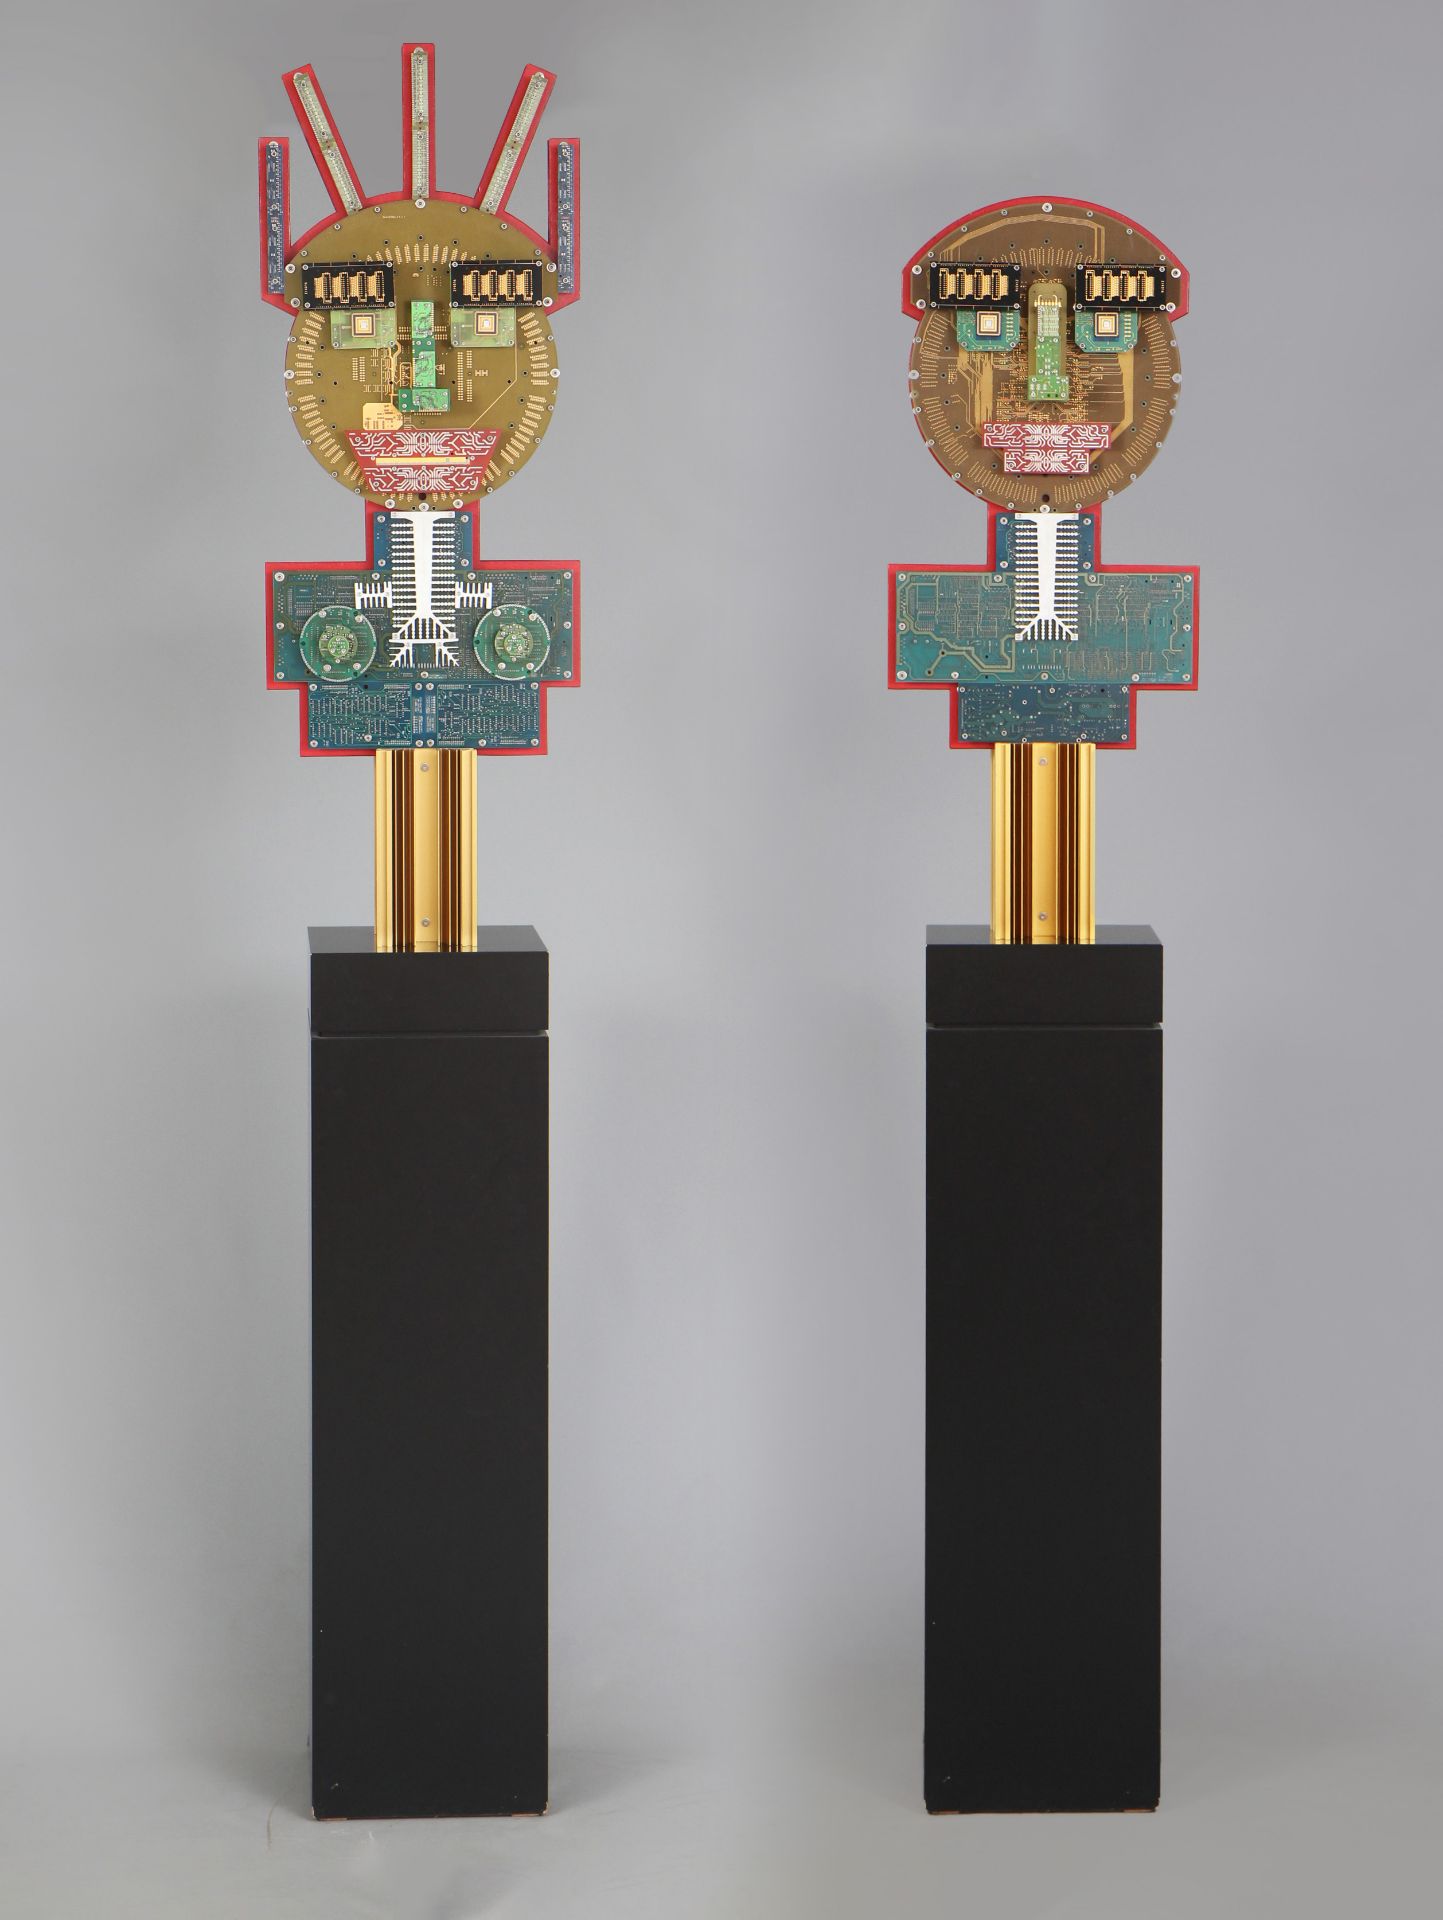 PETRUS WANDREY (1939-2012) Skulpturenpaar ¨Lucy (Primat) & Ramidus (Primat)¨ (1999)